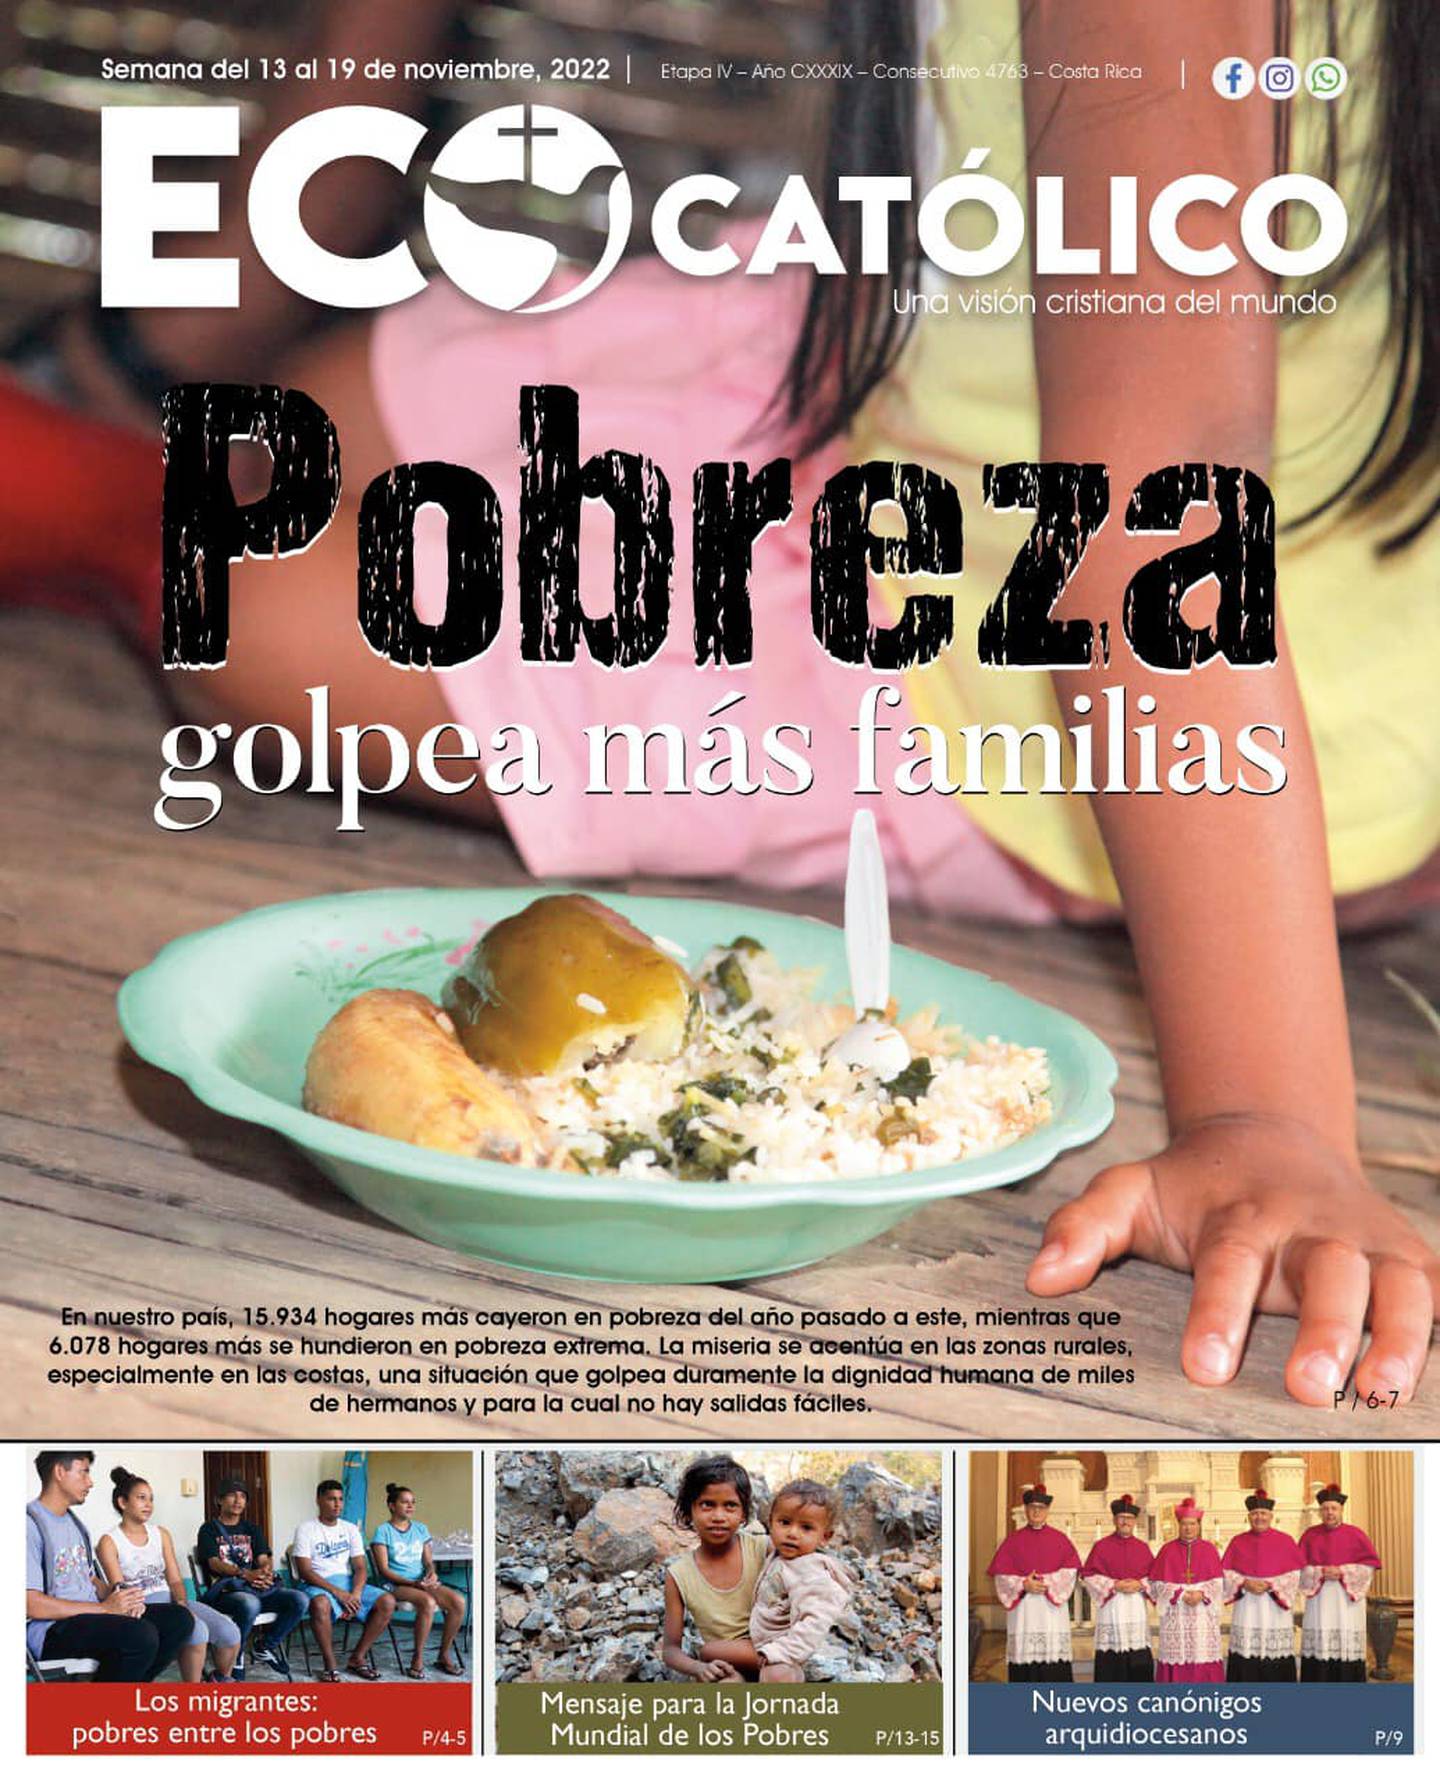 El periódico Eco Católico de Costa Rica, está celebrando este 6 de enero del 2023 sus 140 años de existencia ya que se fundó en 1883